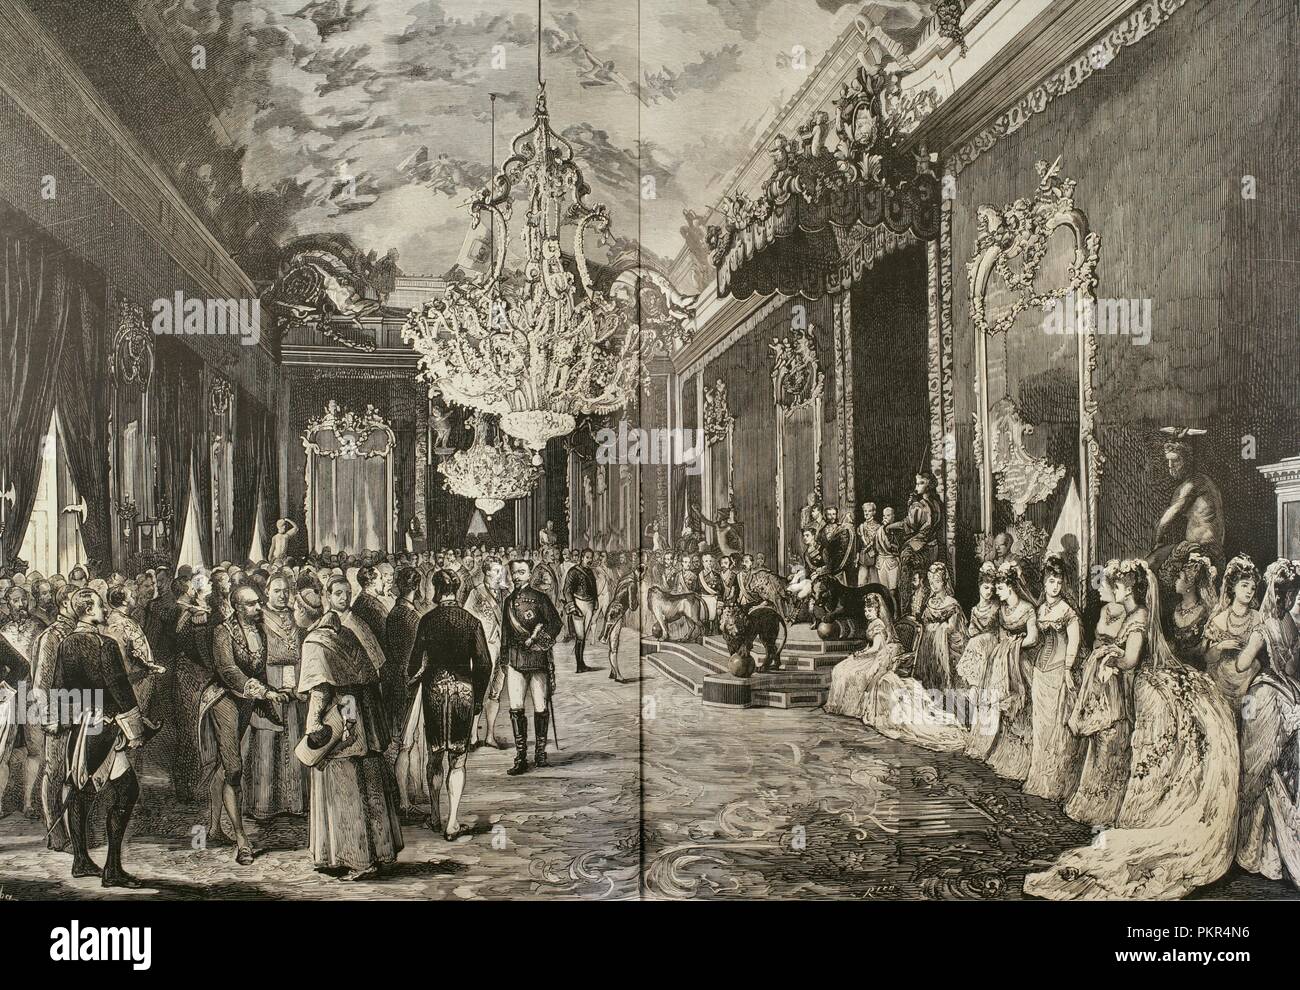 Era de la Restauración Borbónica. España. Madrid. Recepción oficial en el  Salón del Trono del Palacio Real, en celebración de los días de S. M. el  rey Alfonso XII de España (1857-1885),